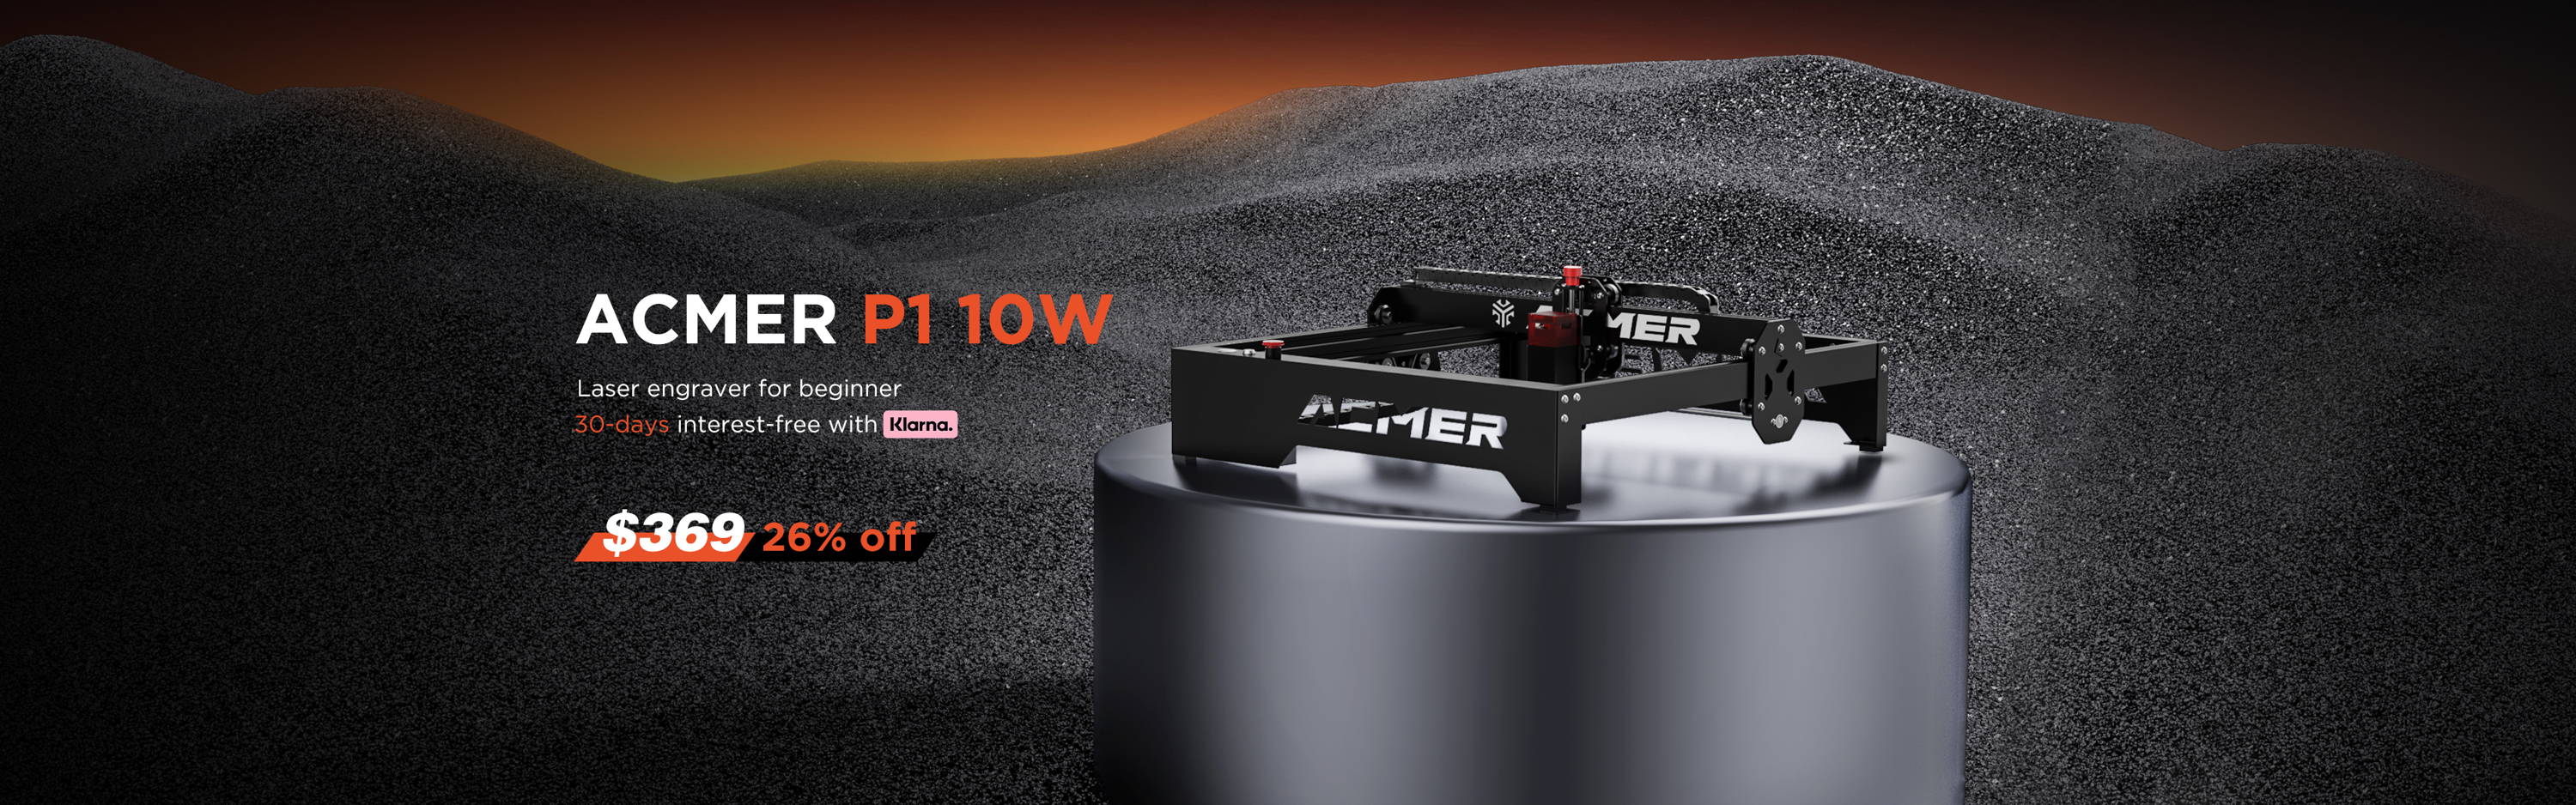 ACMER P1 10w laser engraver for beginner